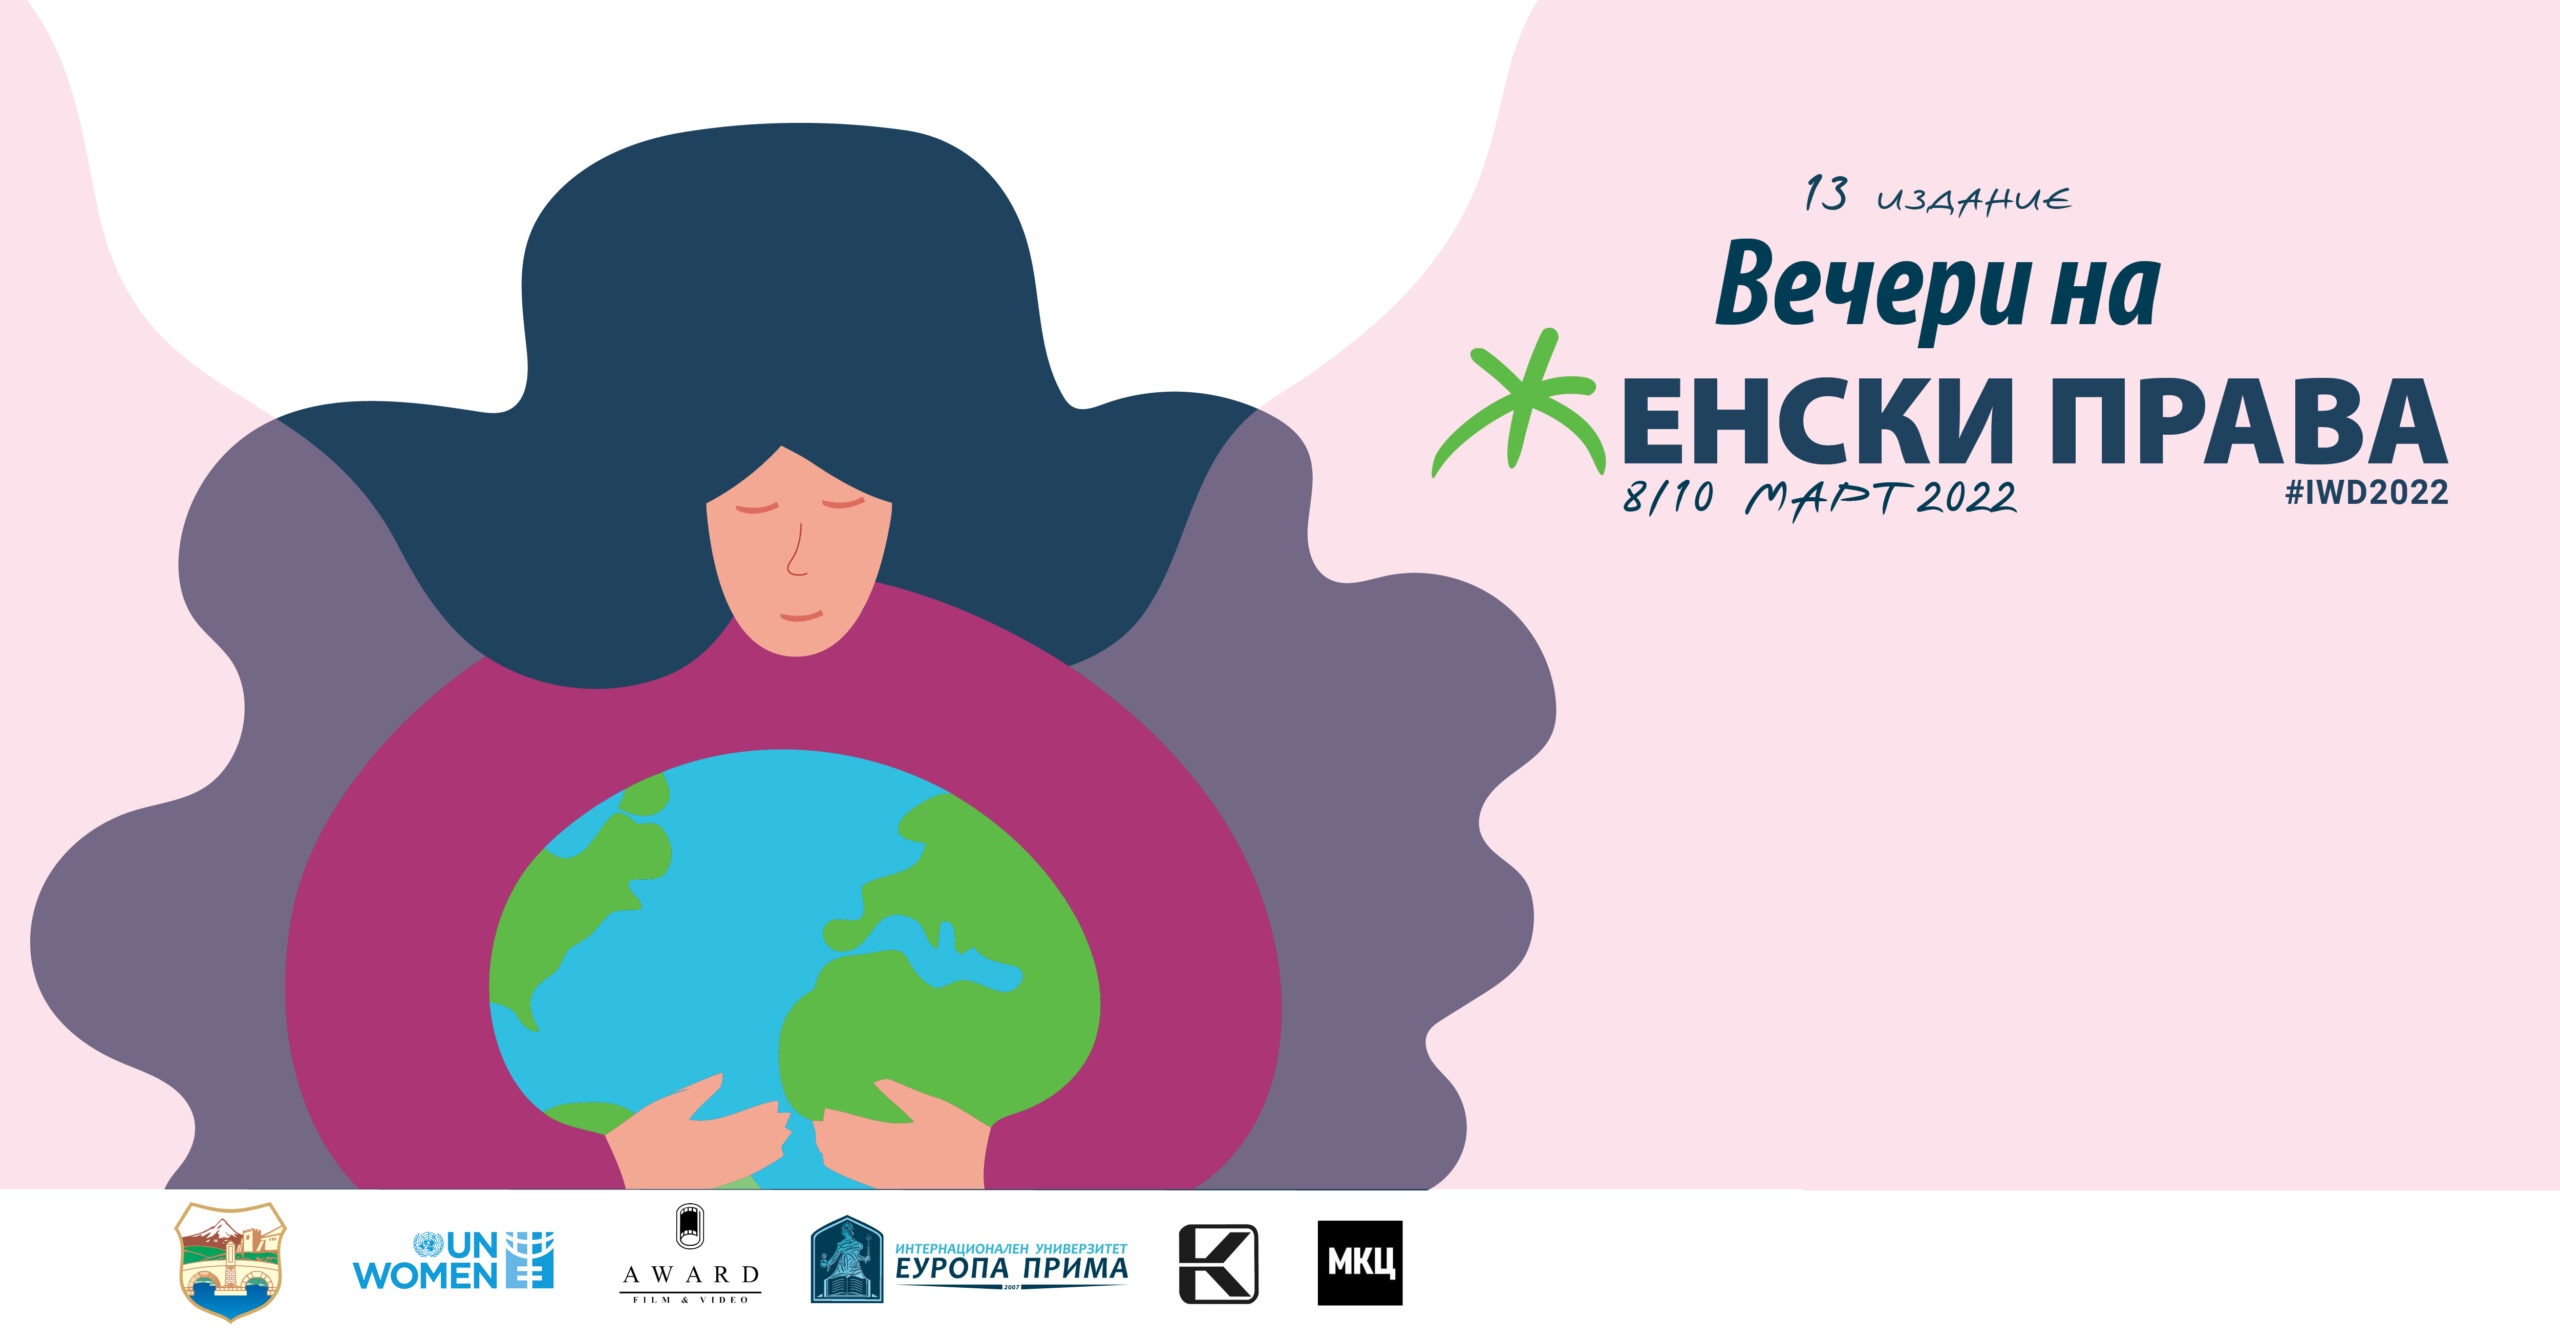 “Вечери на женски права” на повеќе локации во Скопје